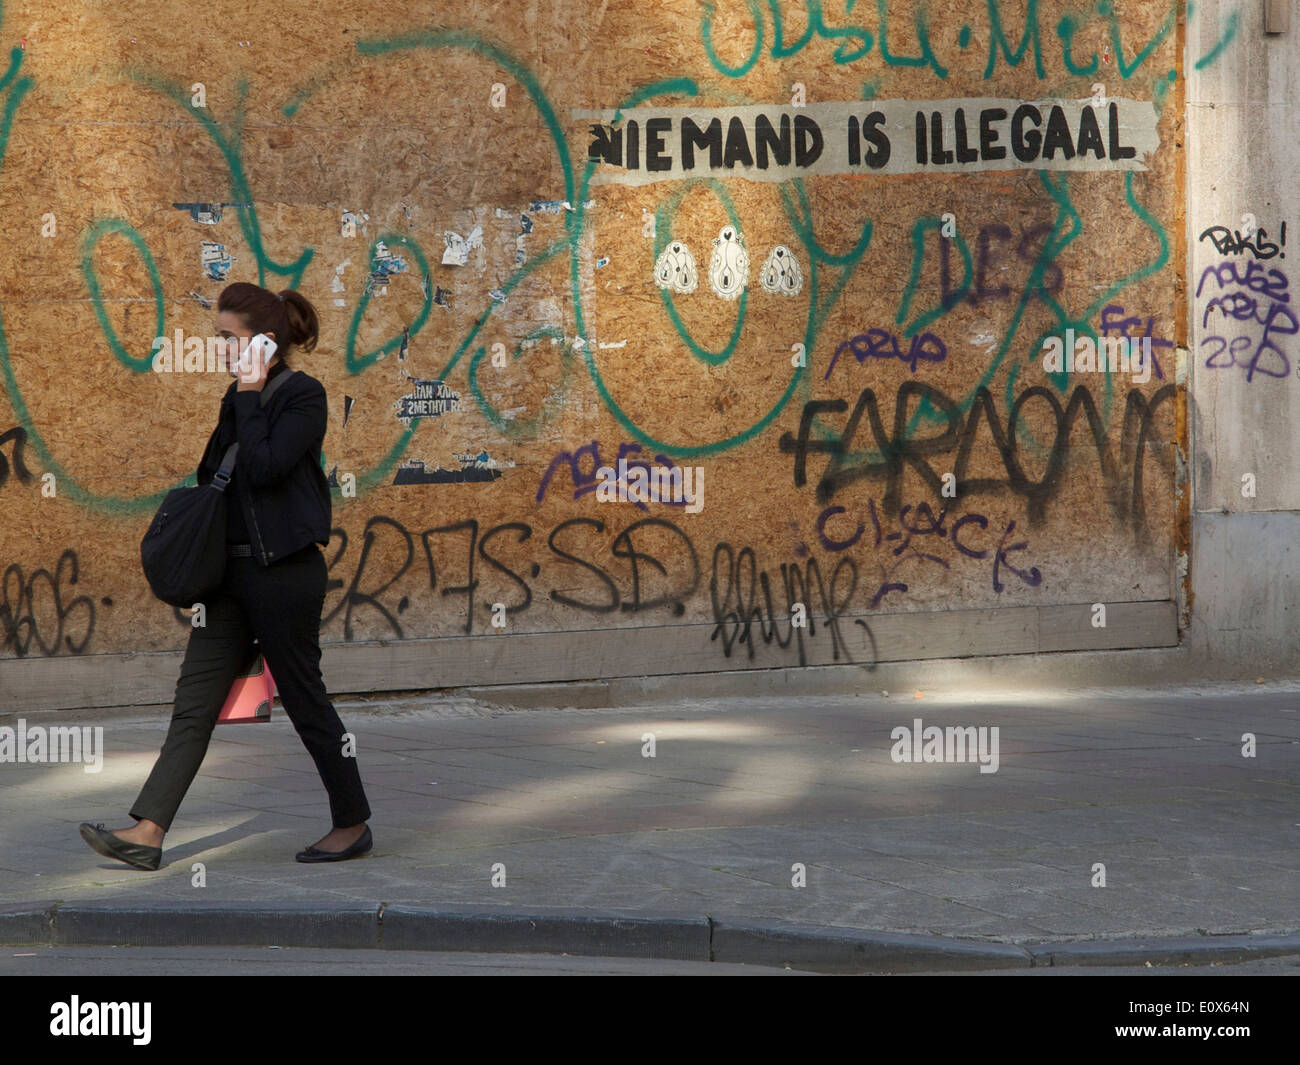 Woman talking on mobile phone avec graffiti disant personne n'est illégal en langue néerlandaise, Bruxelles, Belgique Banque D'Images